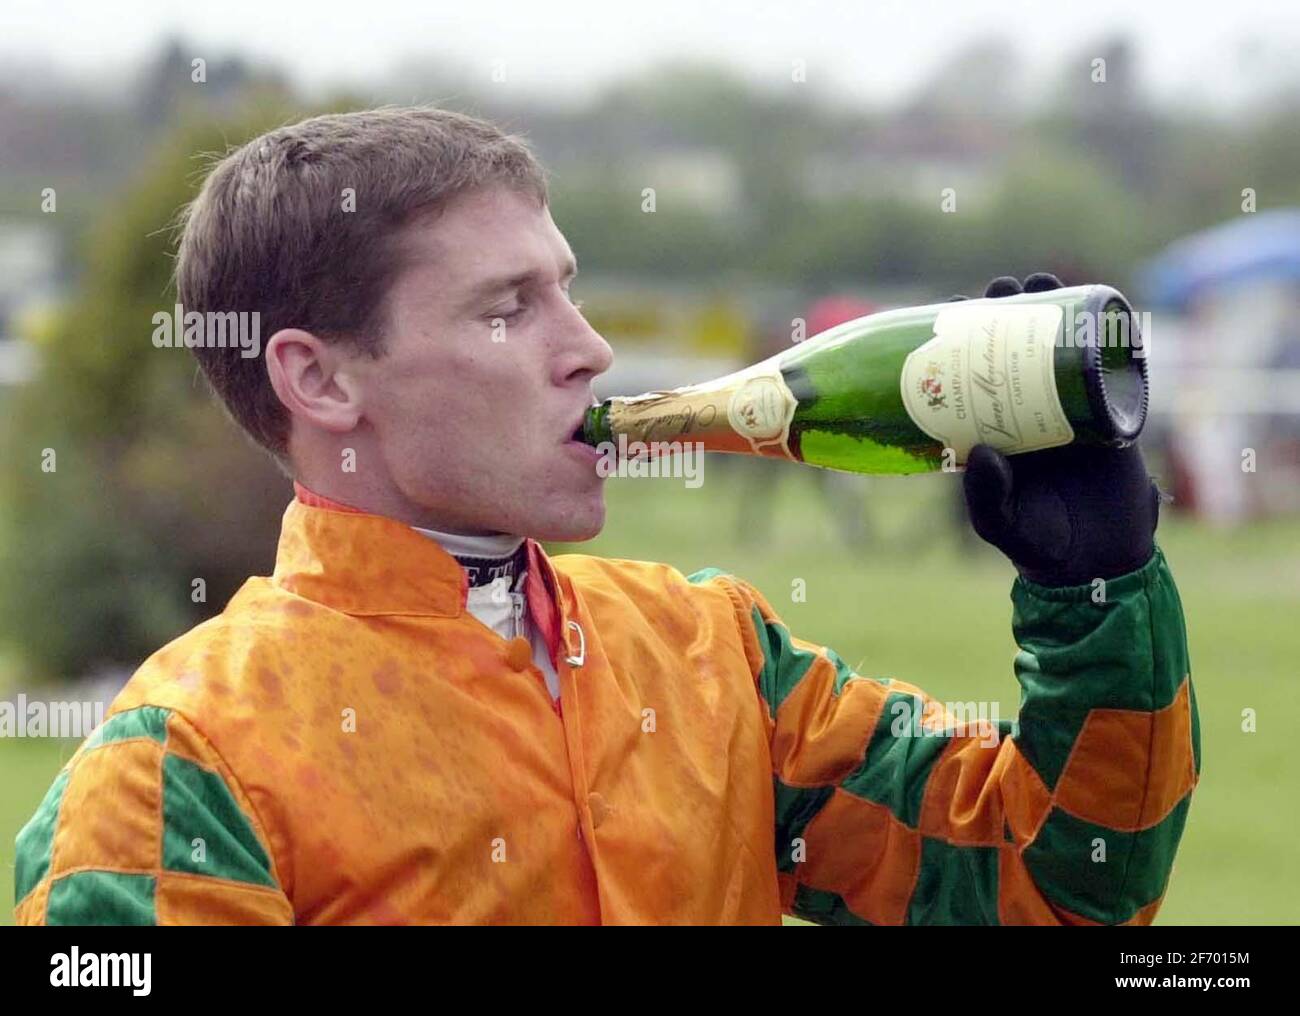 Foto de archivo fechada 19-04-2003 de Richard Johnson celebra con un poco de champán después de su carrera ganadora 1000th. Fecha de emisión: Sábado 3 de abril de 2021. Foto de stock